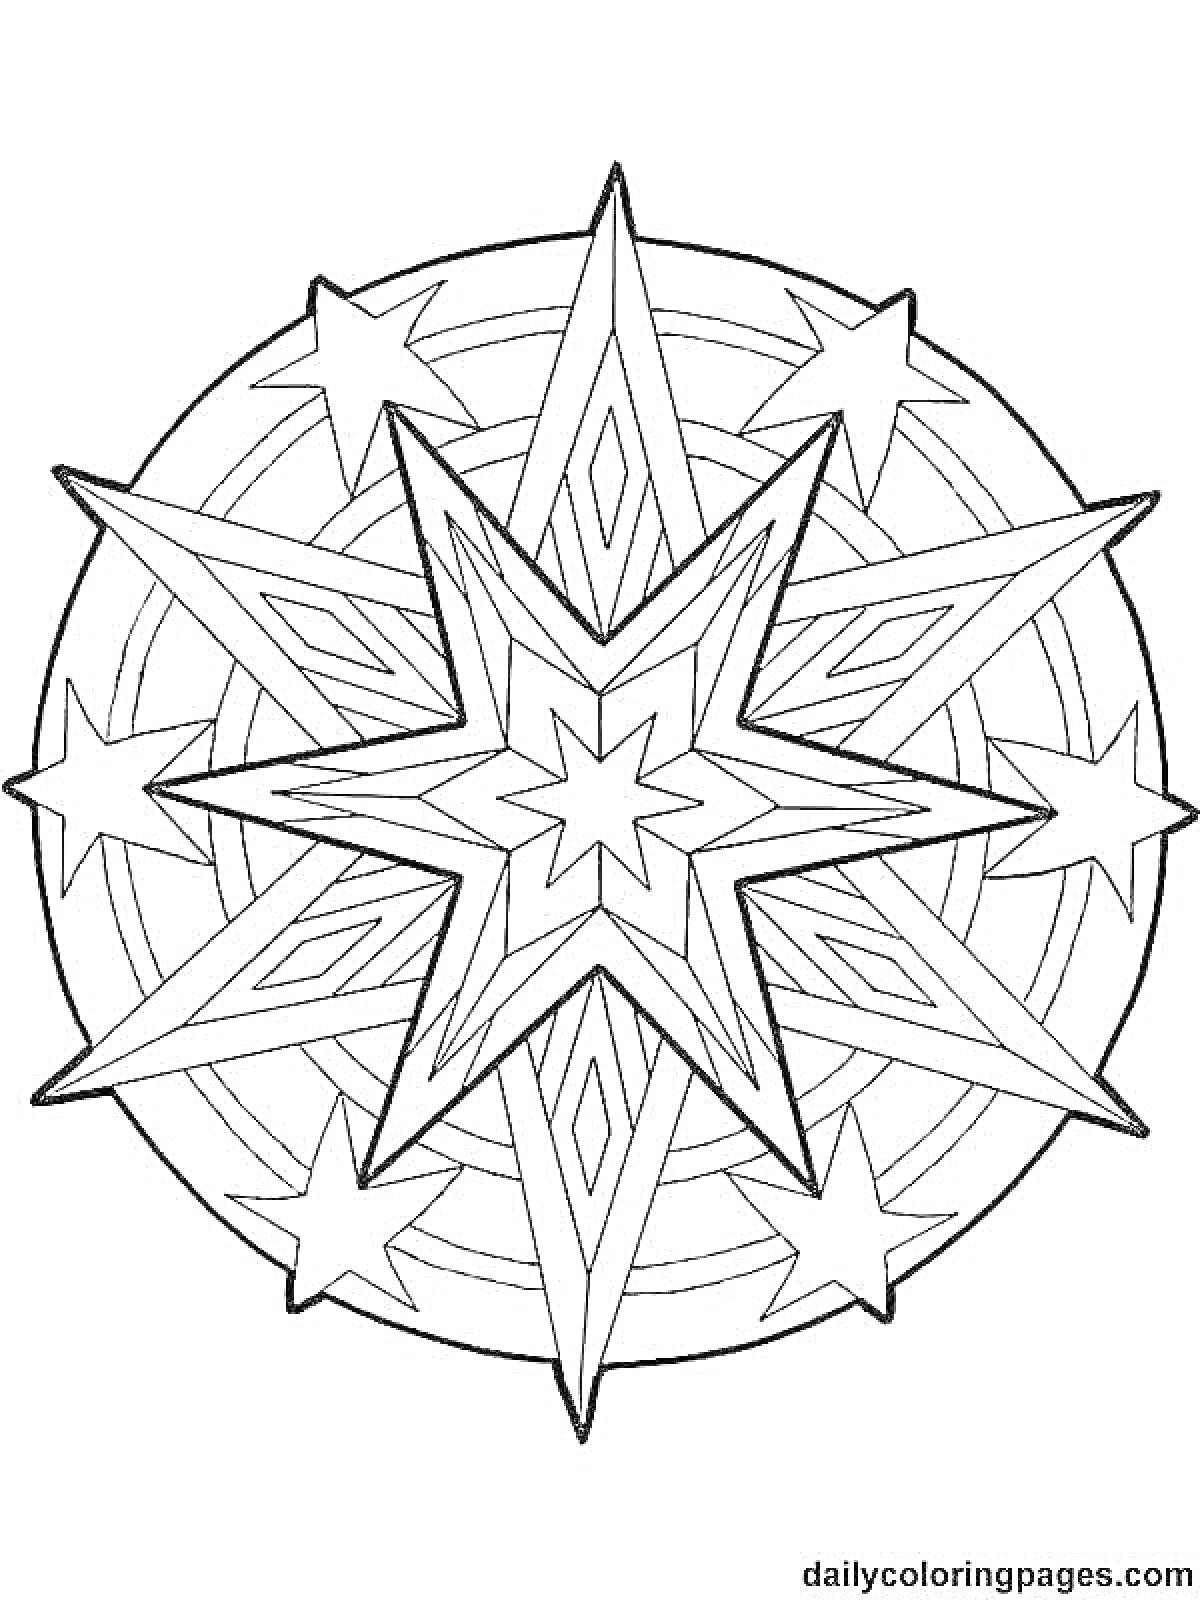 Раскраска Вифлеемская звезда с центральной восьмиконечной звездой и окружностью с маленькими звездами